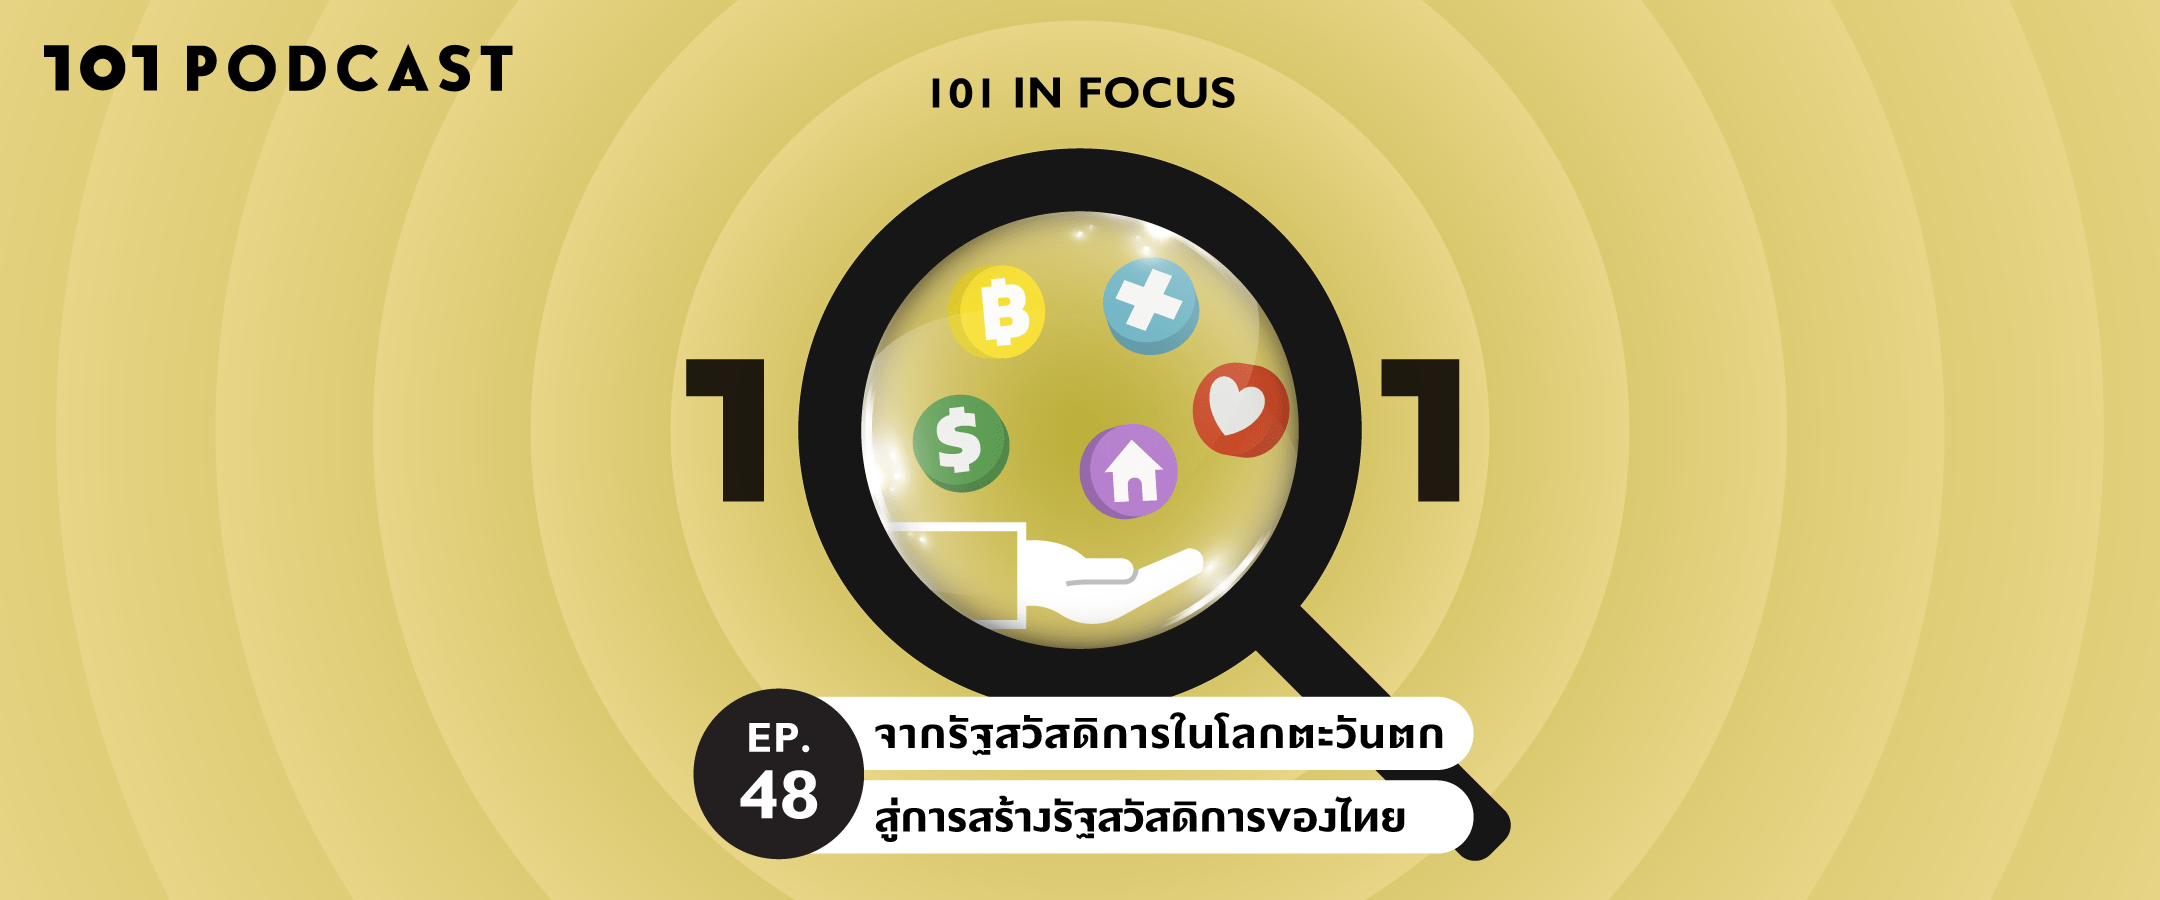 101 In Focus Ep.48 : จากรัฐสวัสดิการในโลกตะวันตก สู่การสร้างรัฐสวัสดิการของไทย